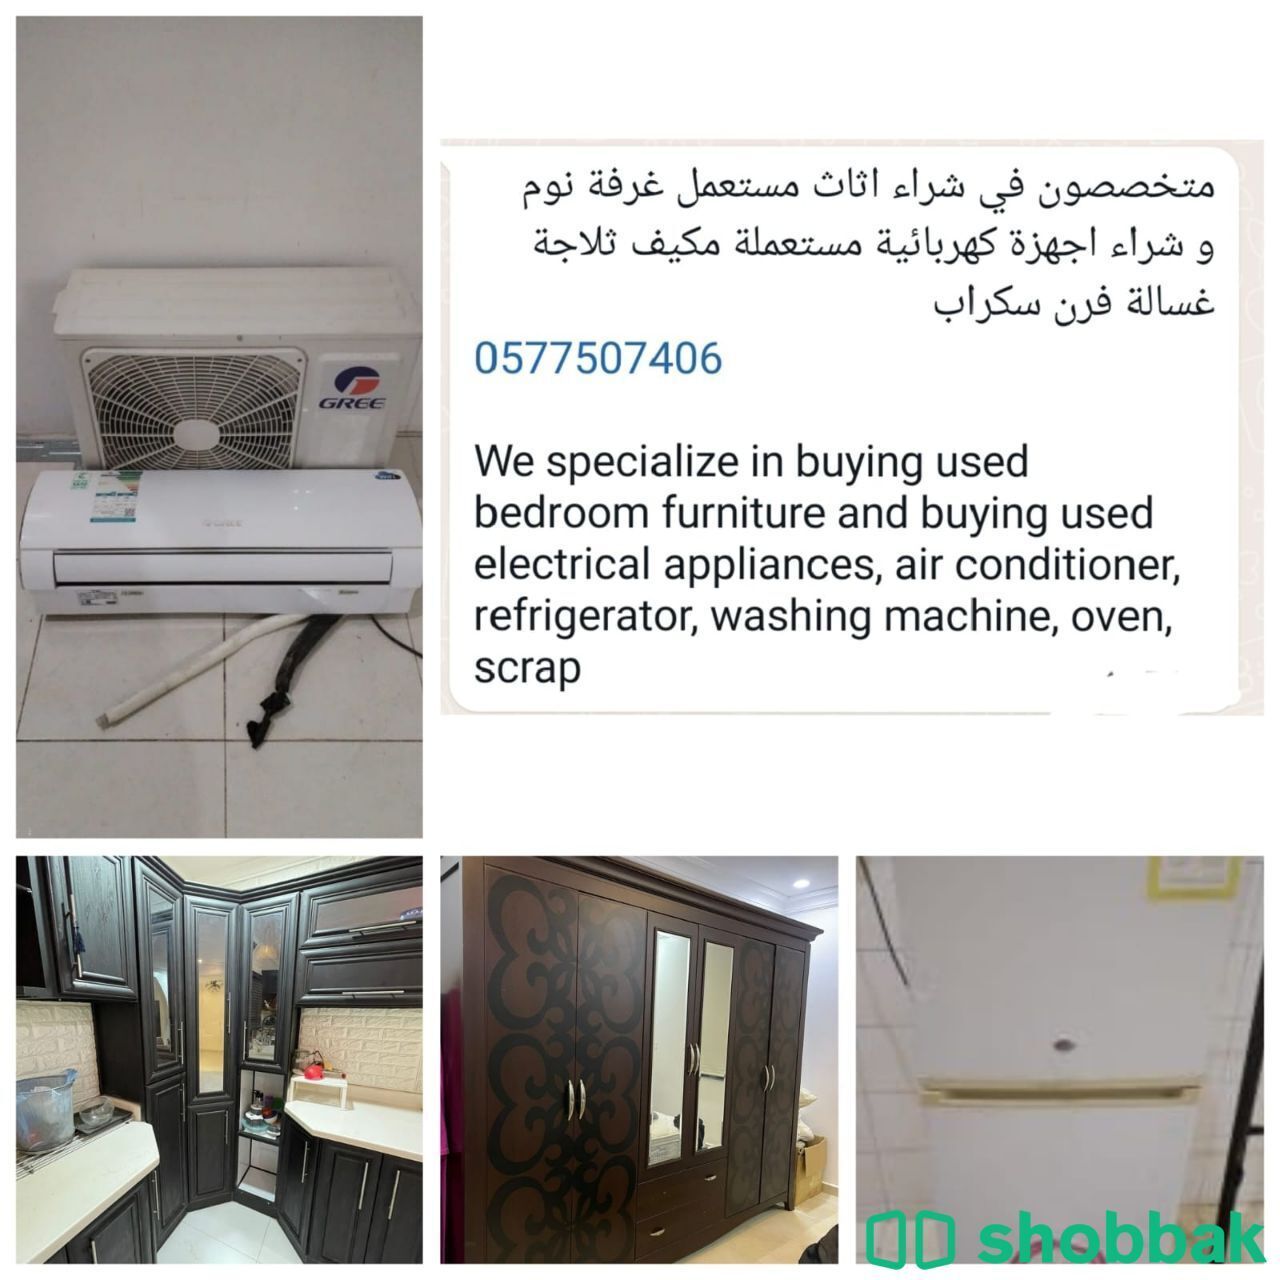 Home furniture Shobbak Saudi Arabia